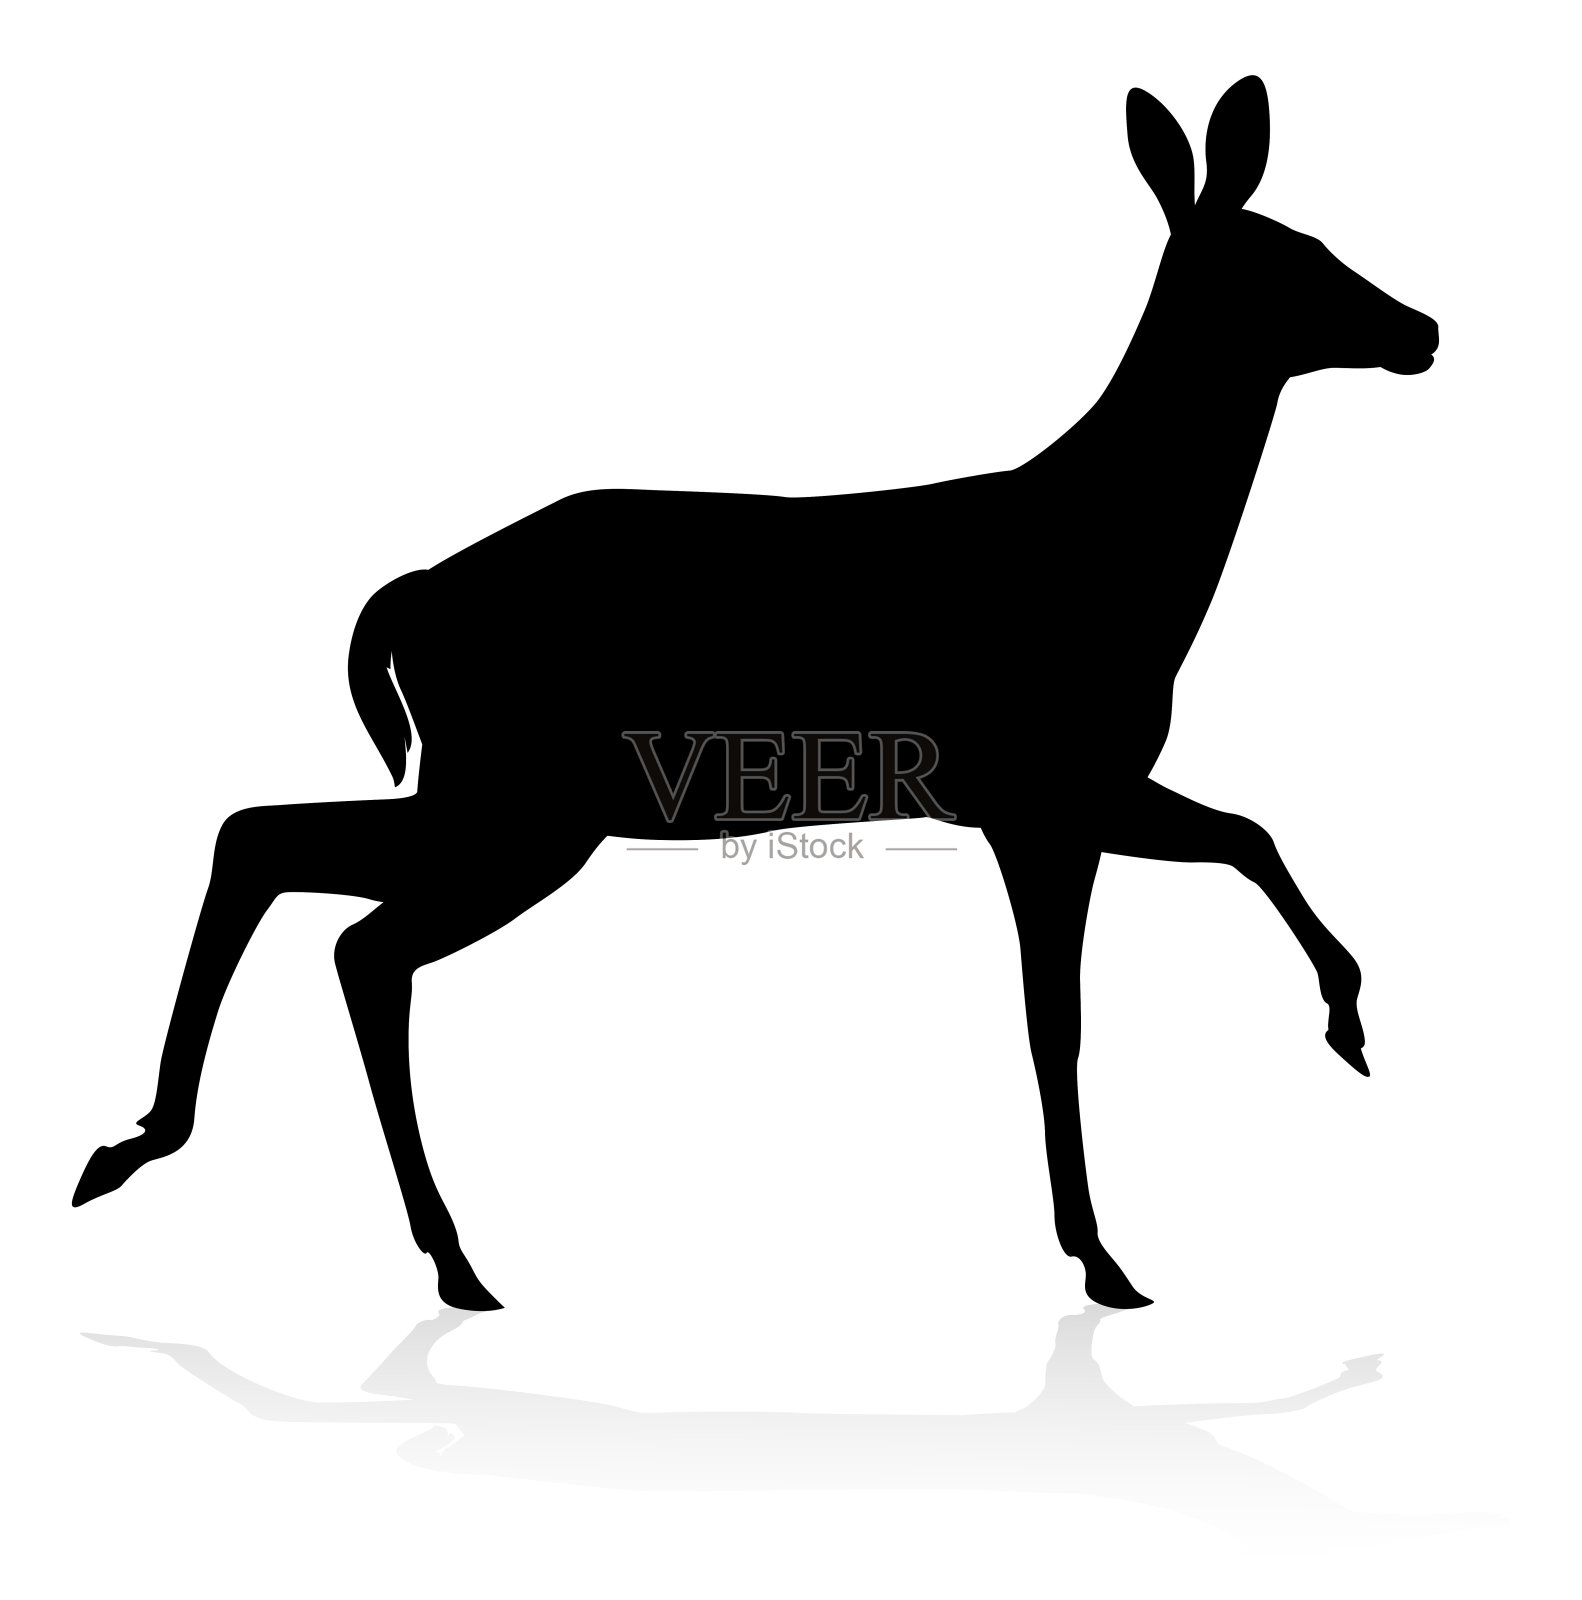 鹿的动物轮廓设计元素图片